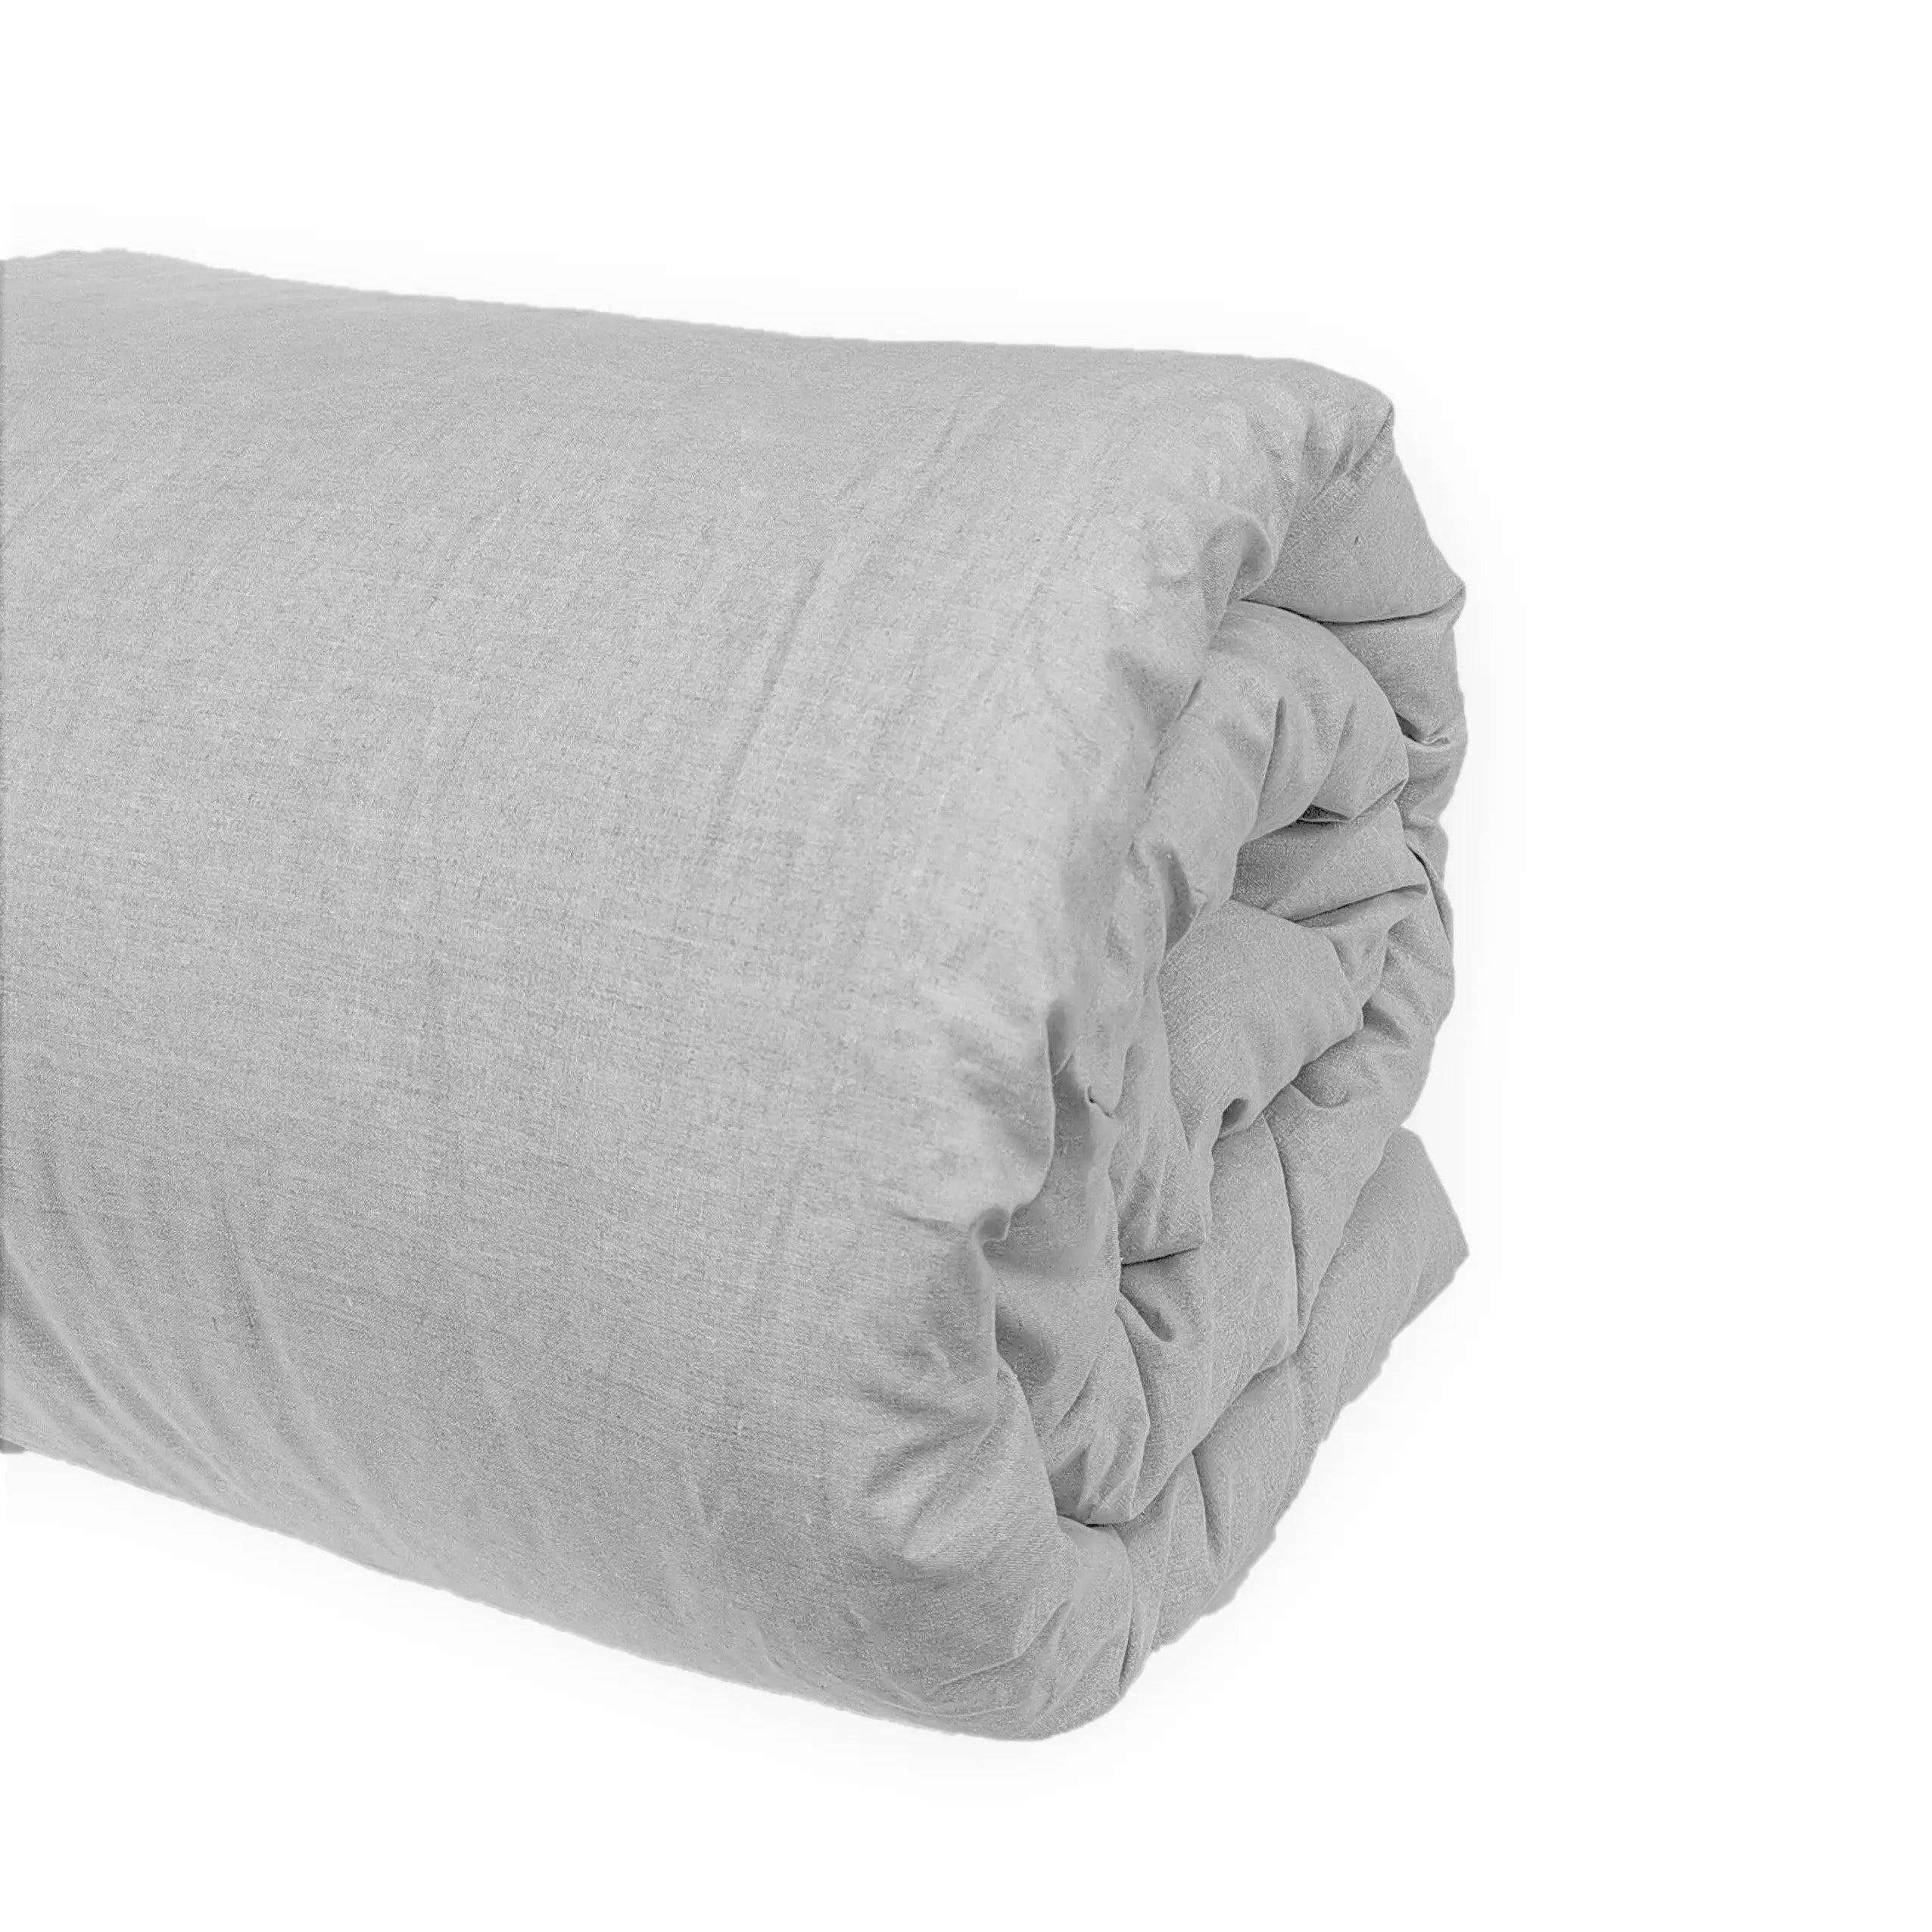 100% Linen Bedding in Grey